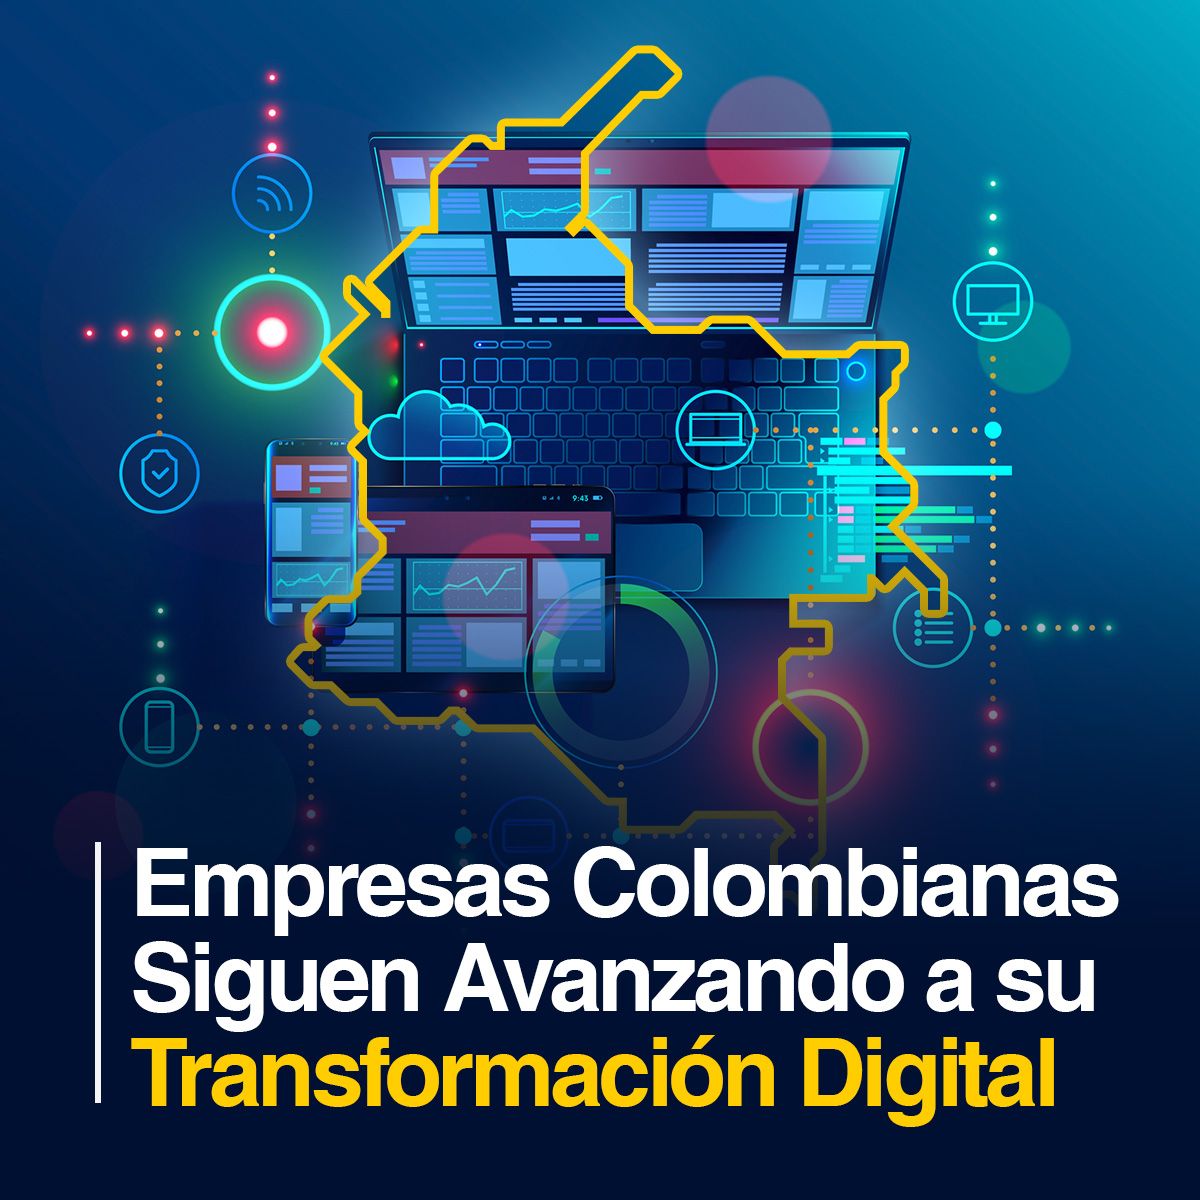 Empresas Colombianas Siguen Avanzando a su Transformación Digital